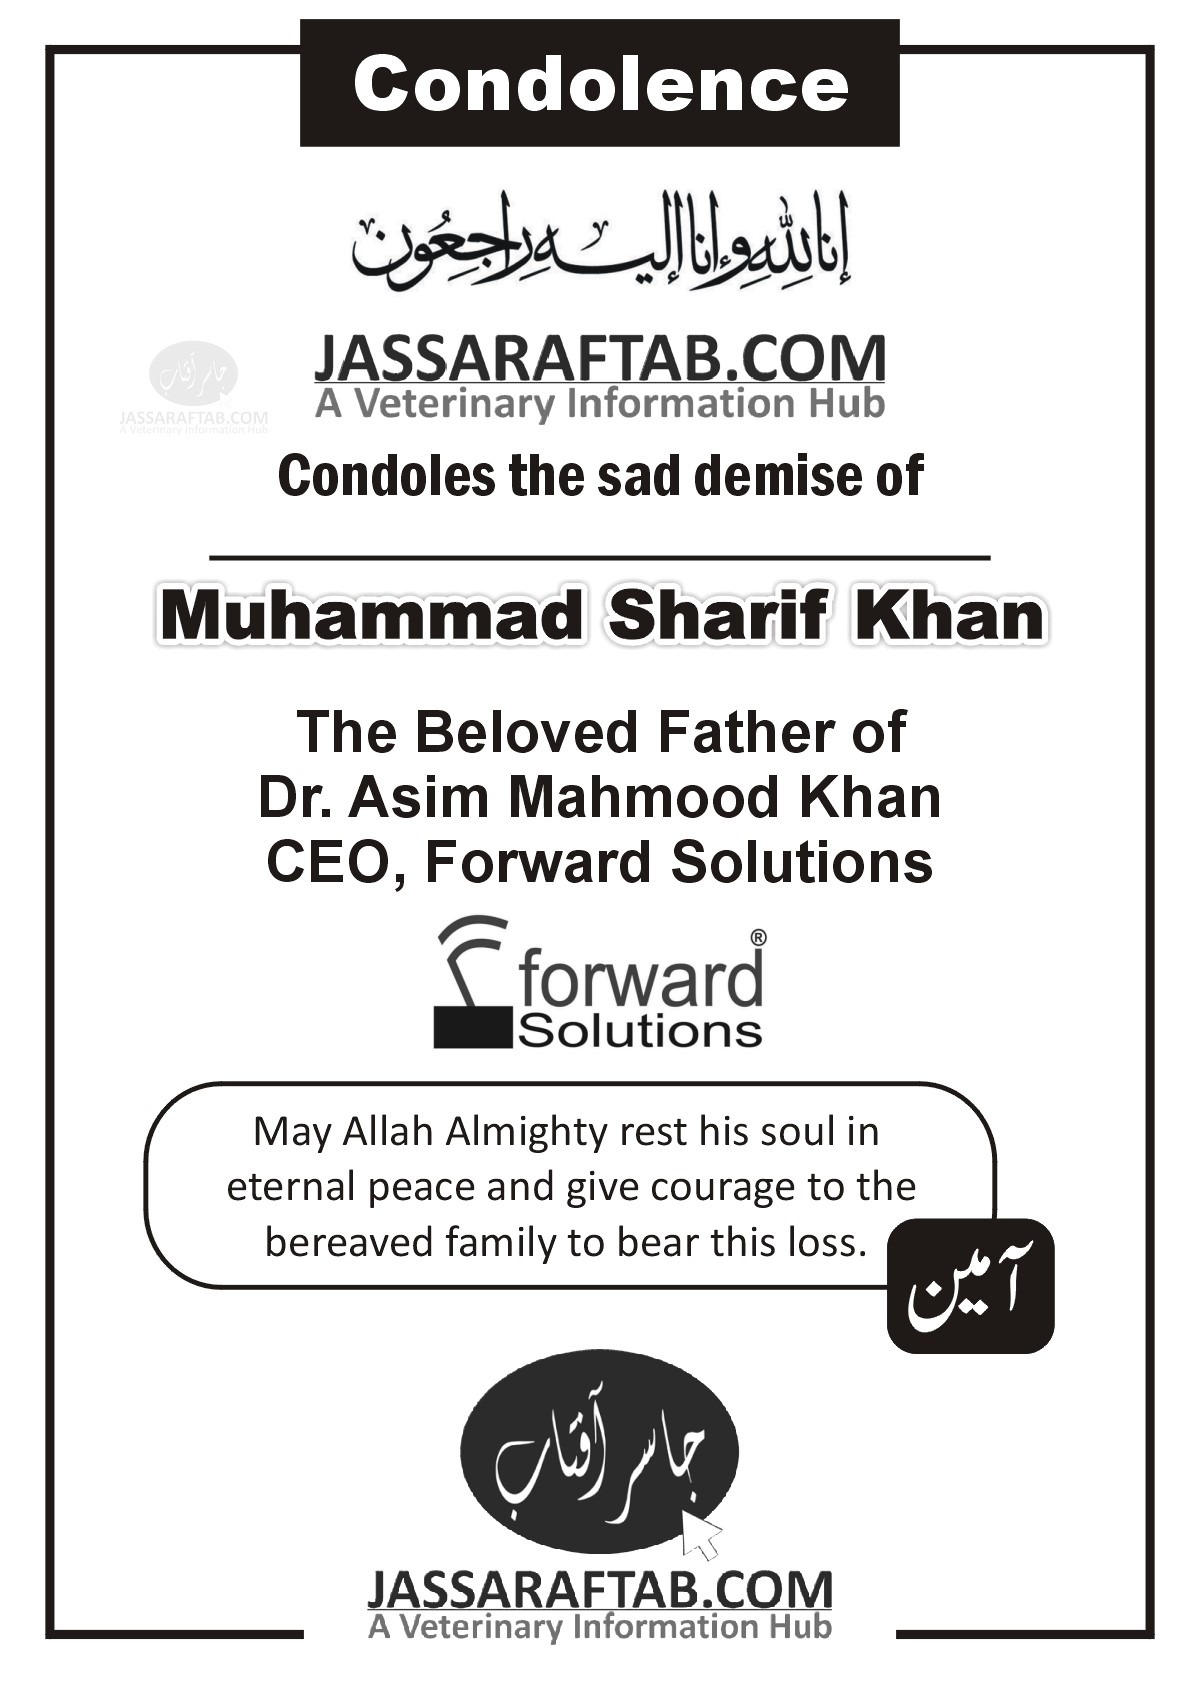 ڈاکٹر عاصم محمود خان کے والد کا انتقال، اللہ ان کے درجات بلند فرمائے، آمین